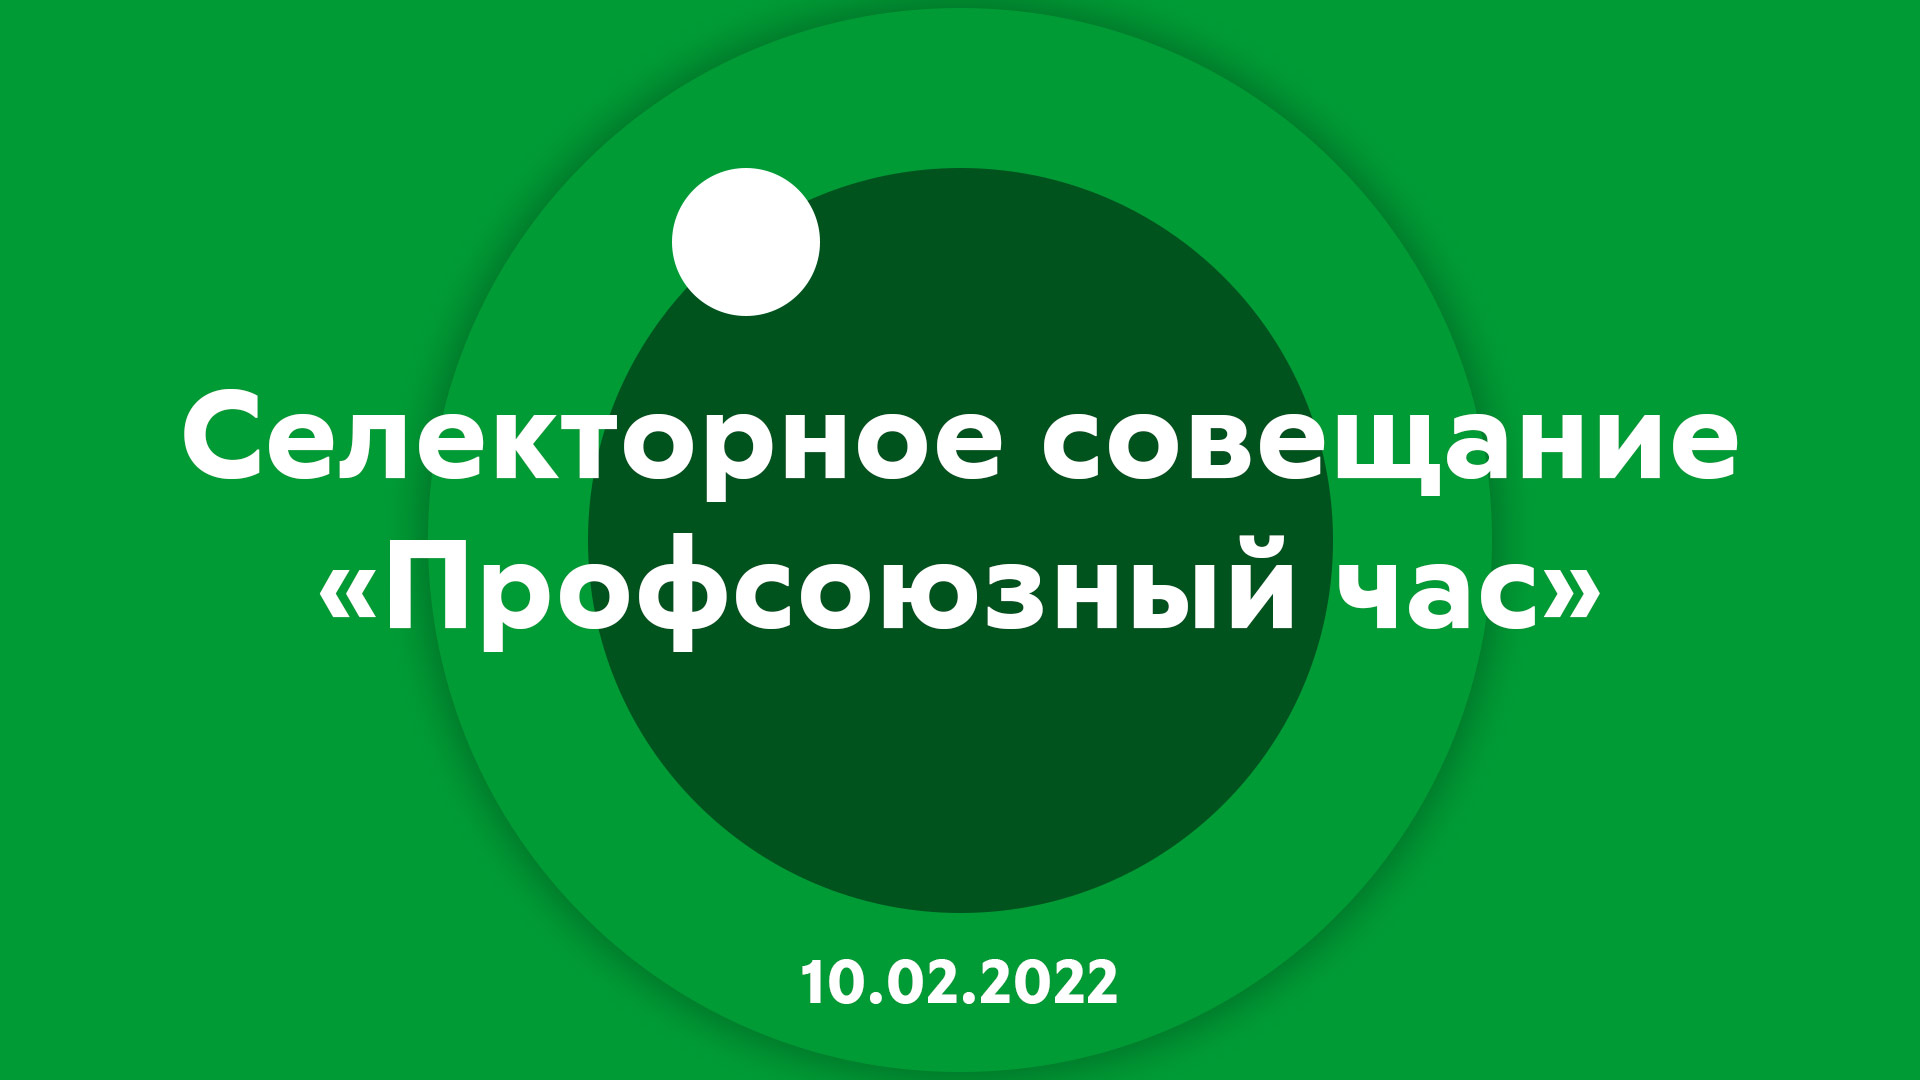 Селекторное совещание "Профсоюзный час" 10.02.2022